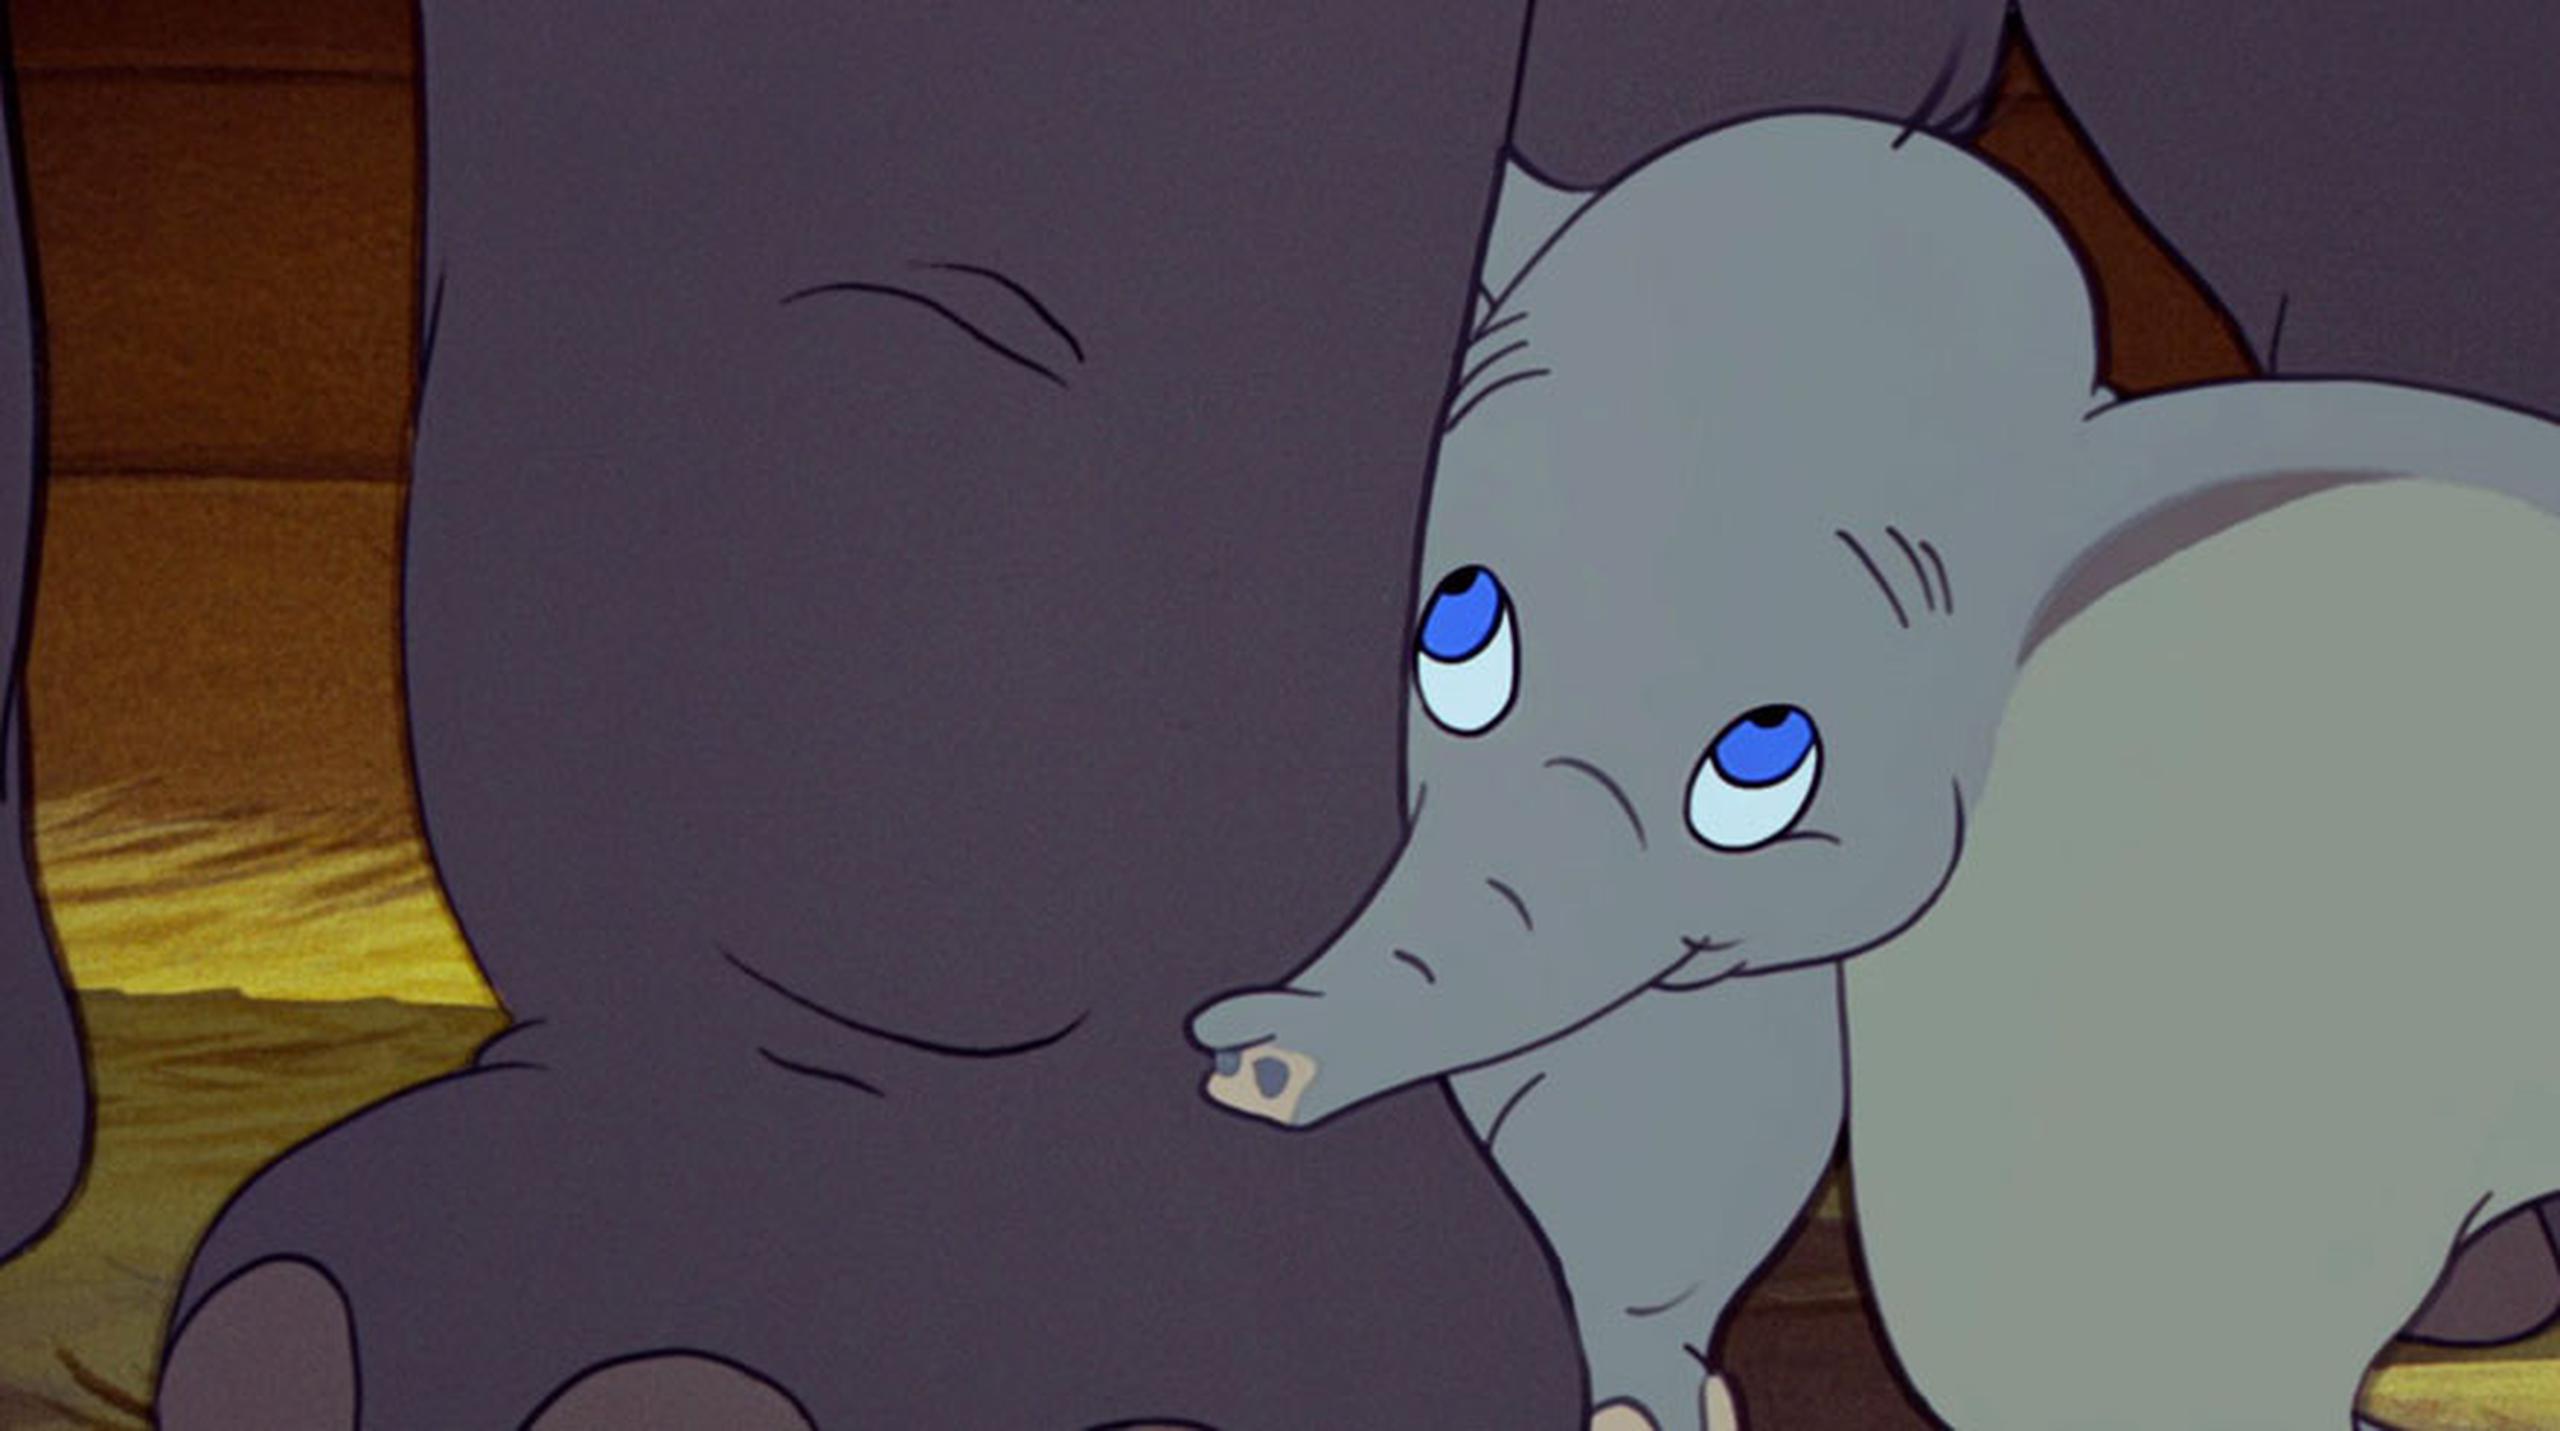 La historia del tierno elefante de enormes ojos azules se convirtió en el cuarto largometraje que dirigió Walt Disney y lo llevó al reconocimiento mundial.